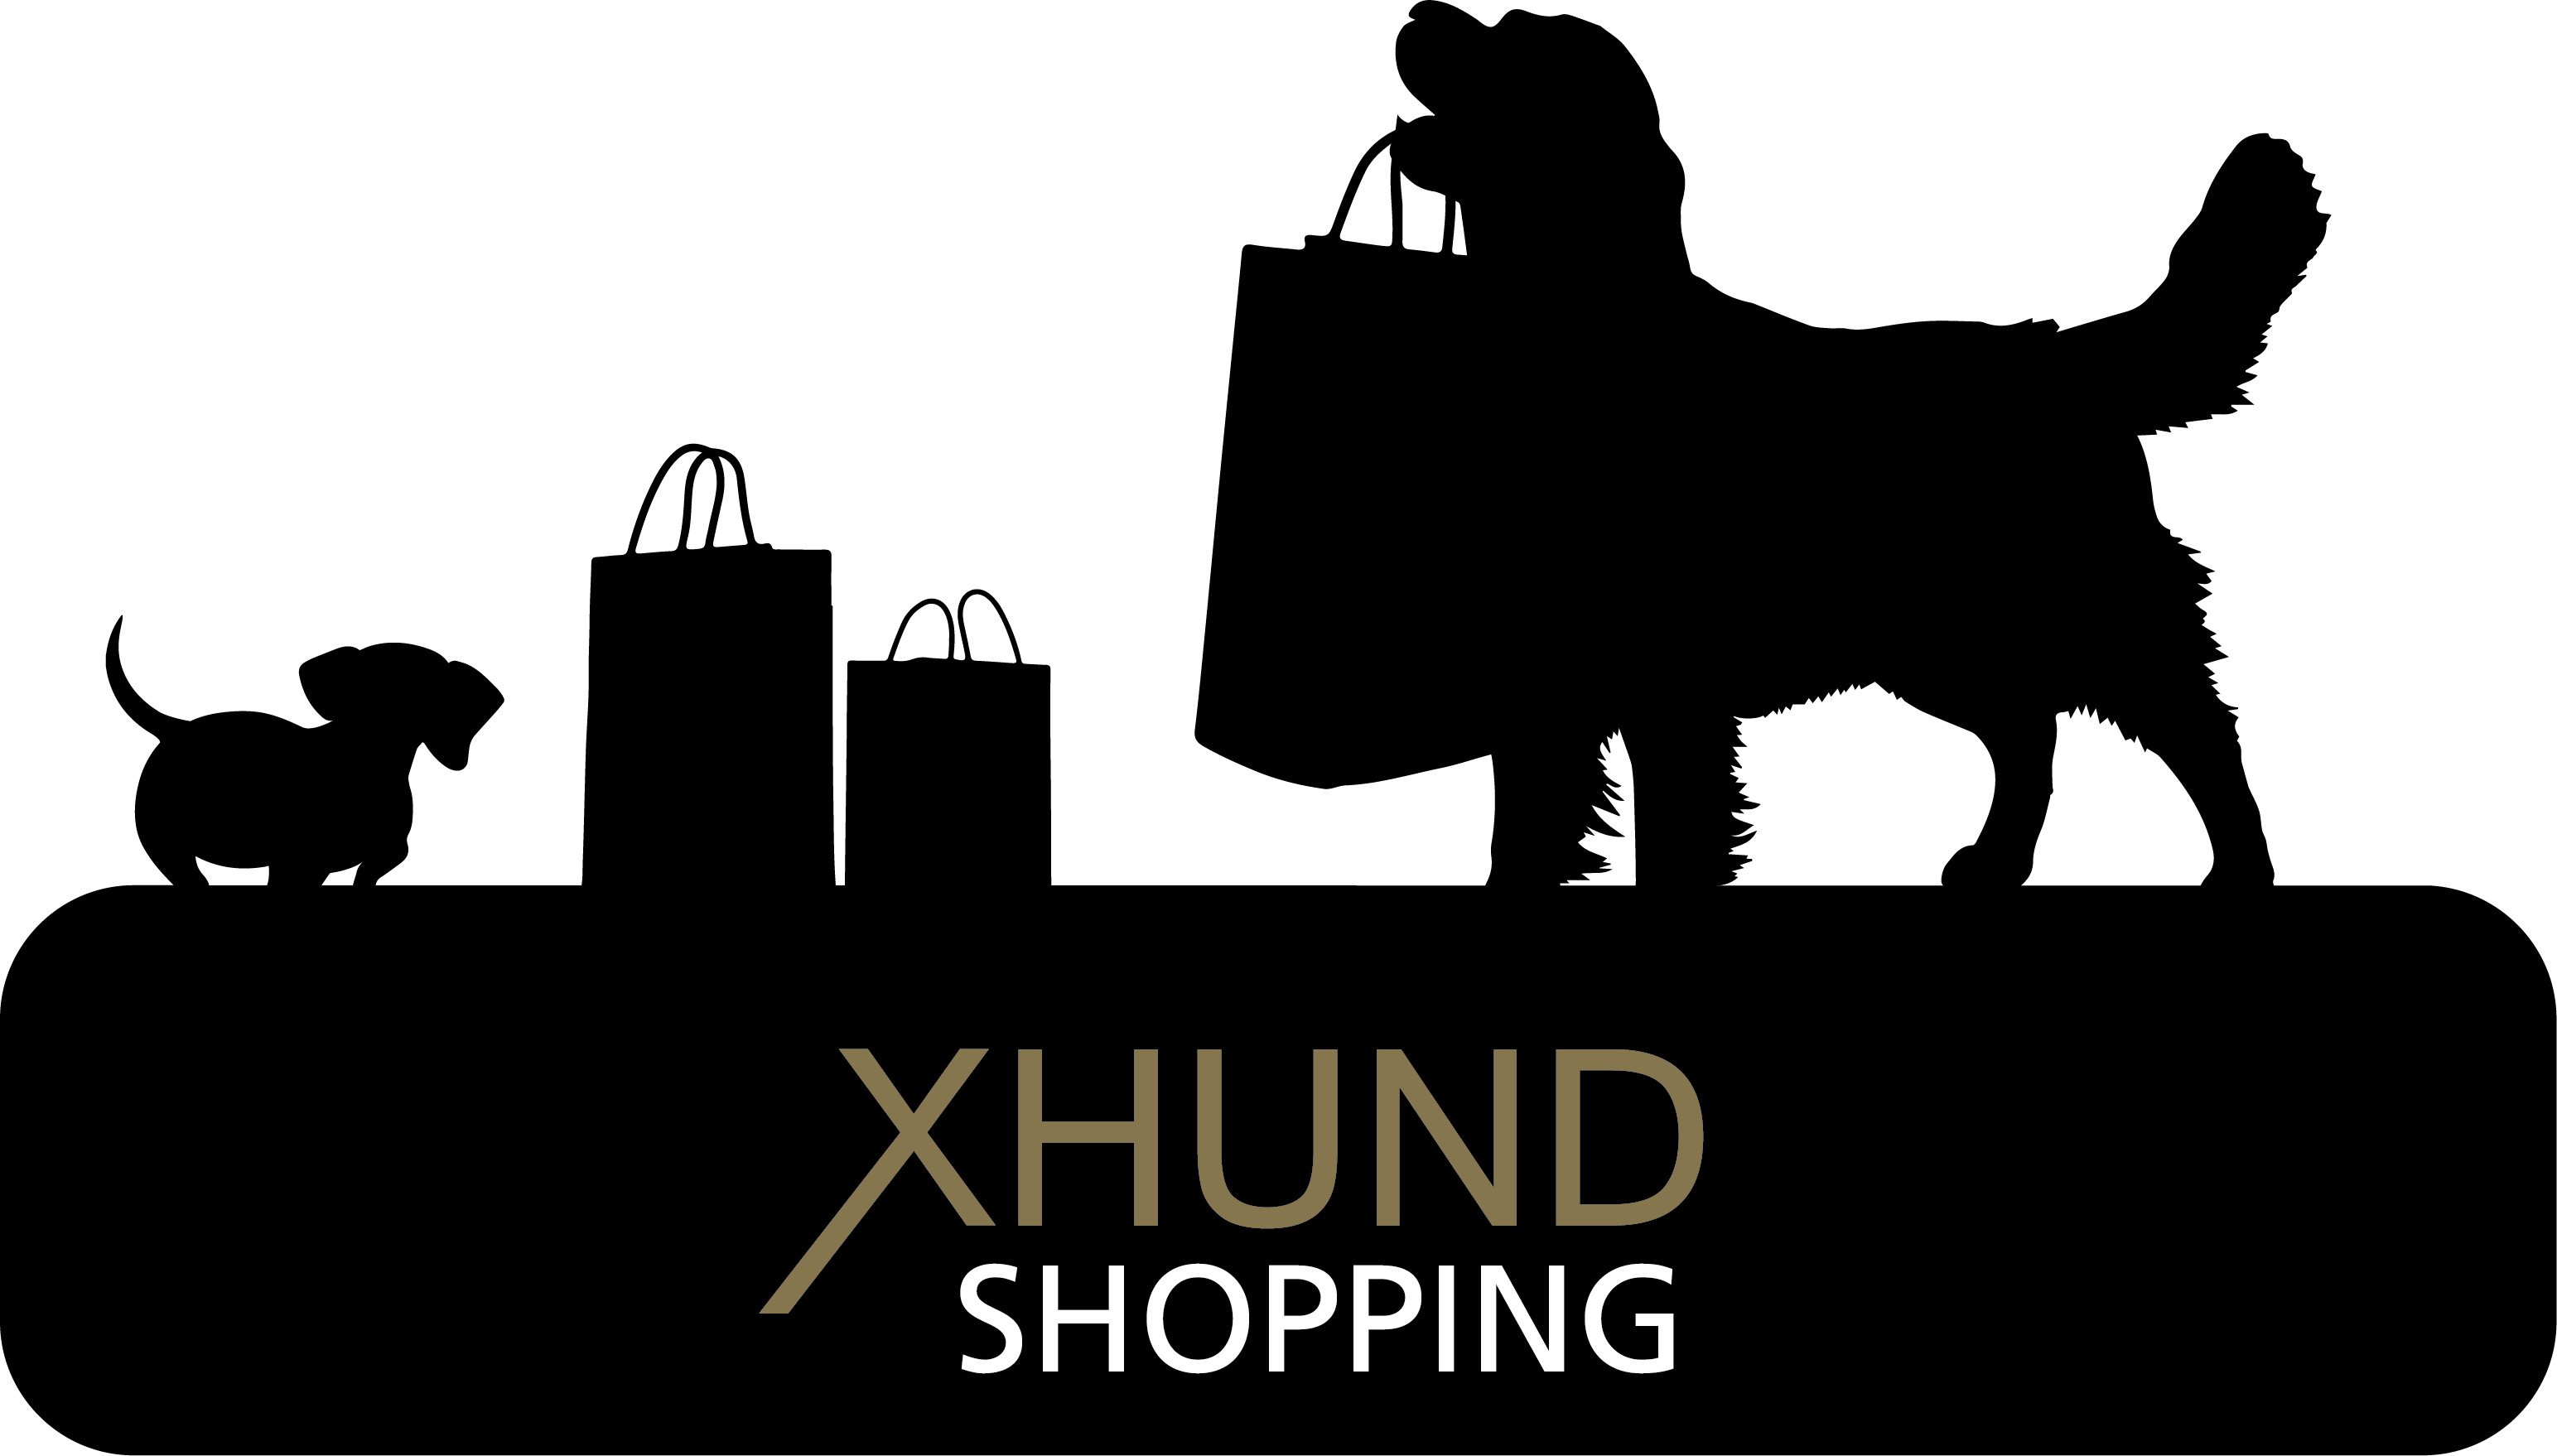 XHUND Shopping